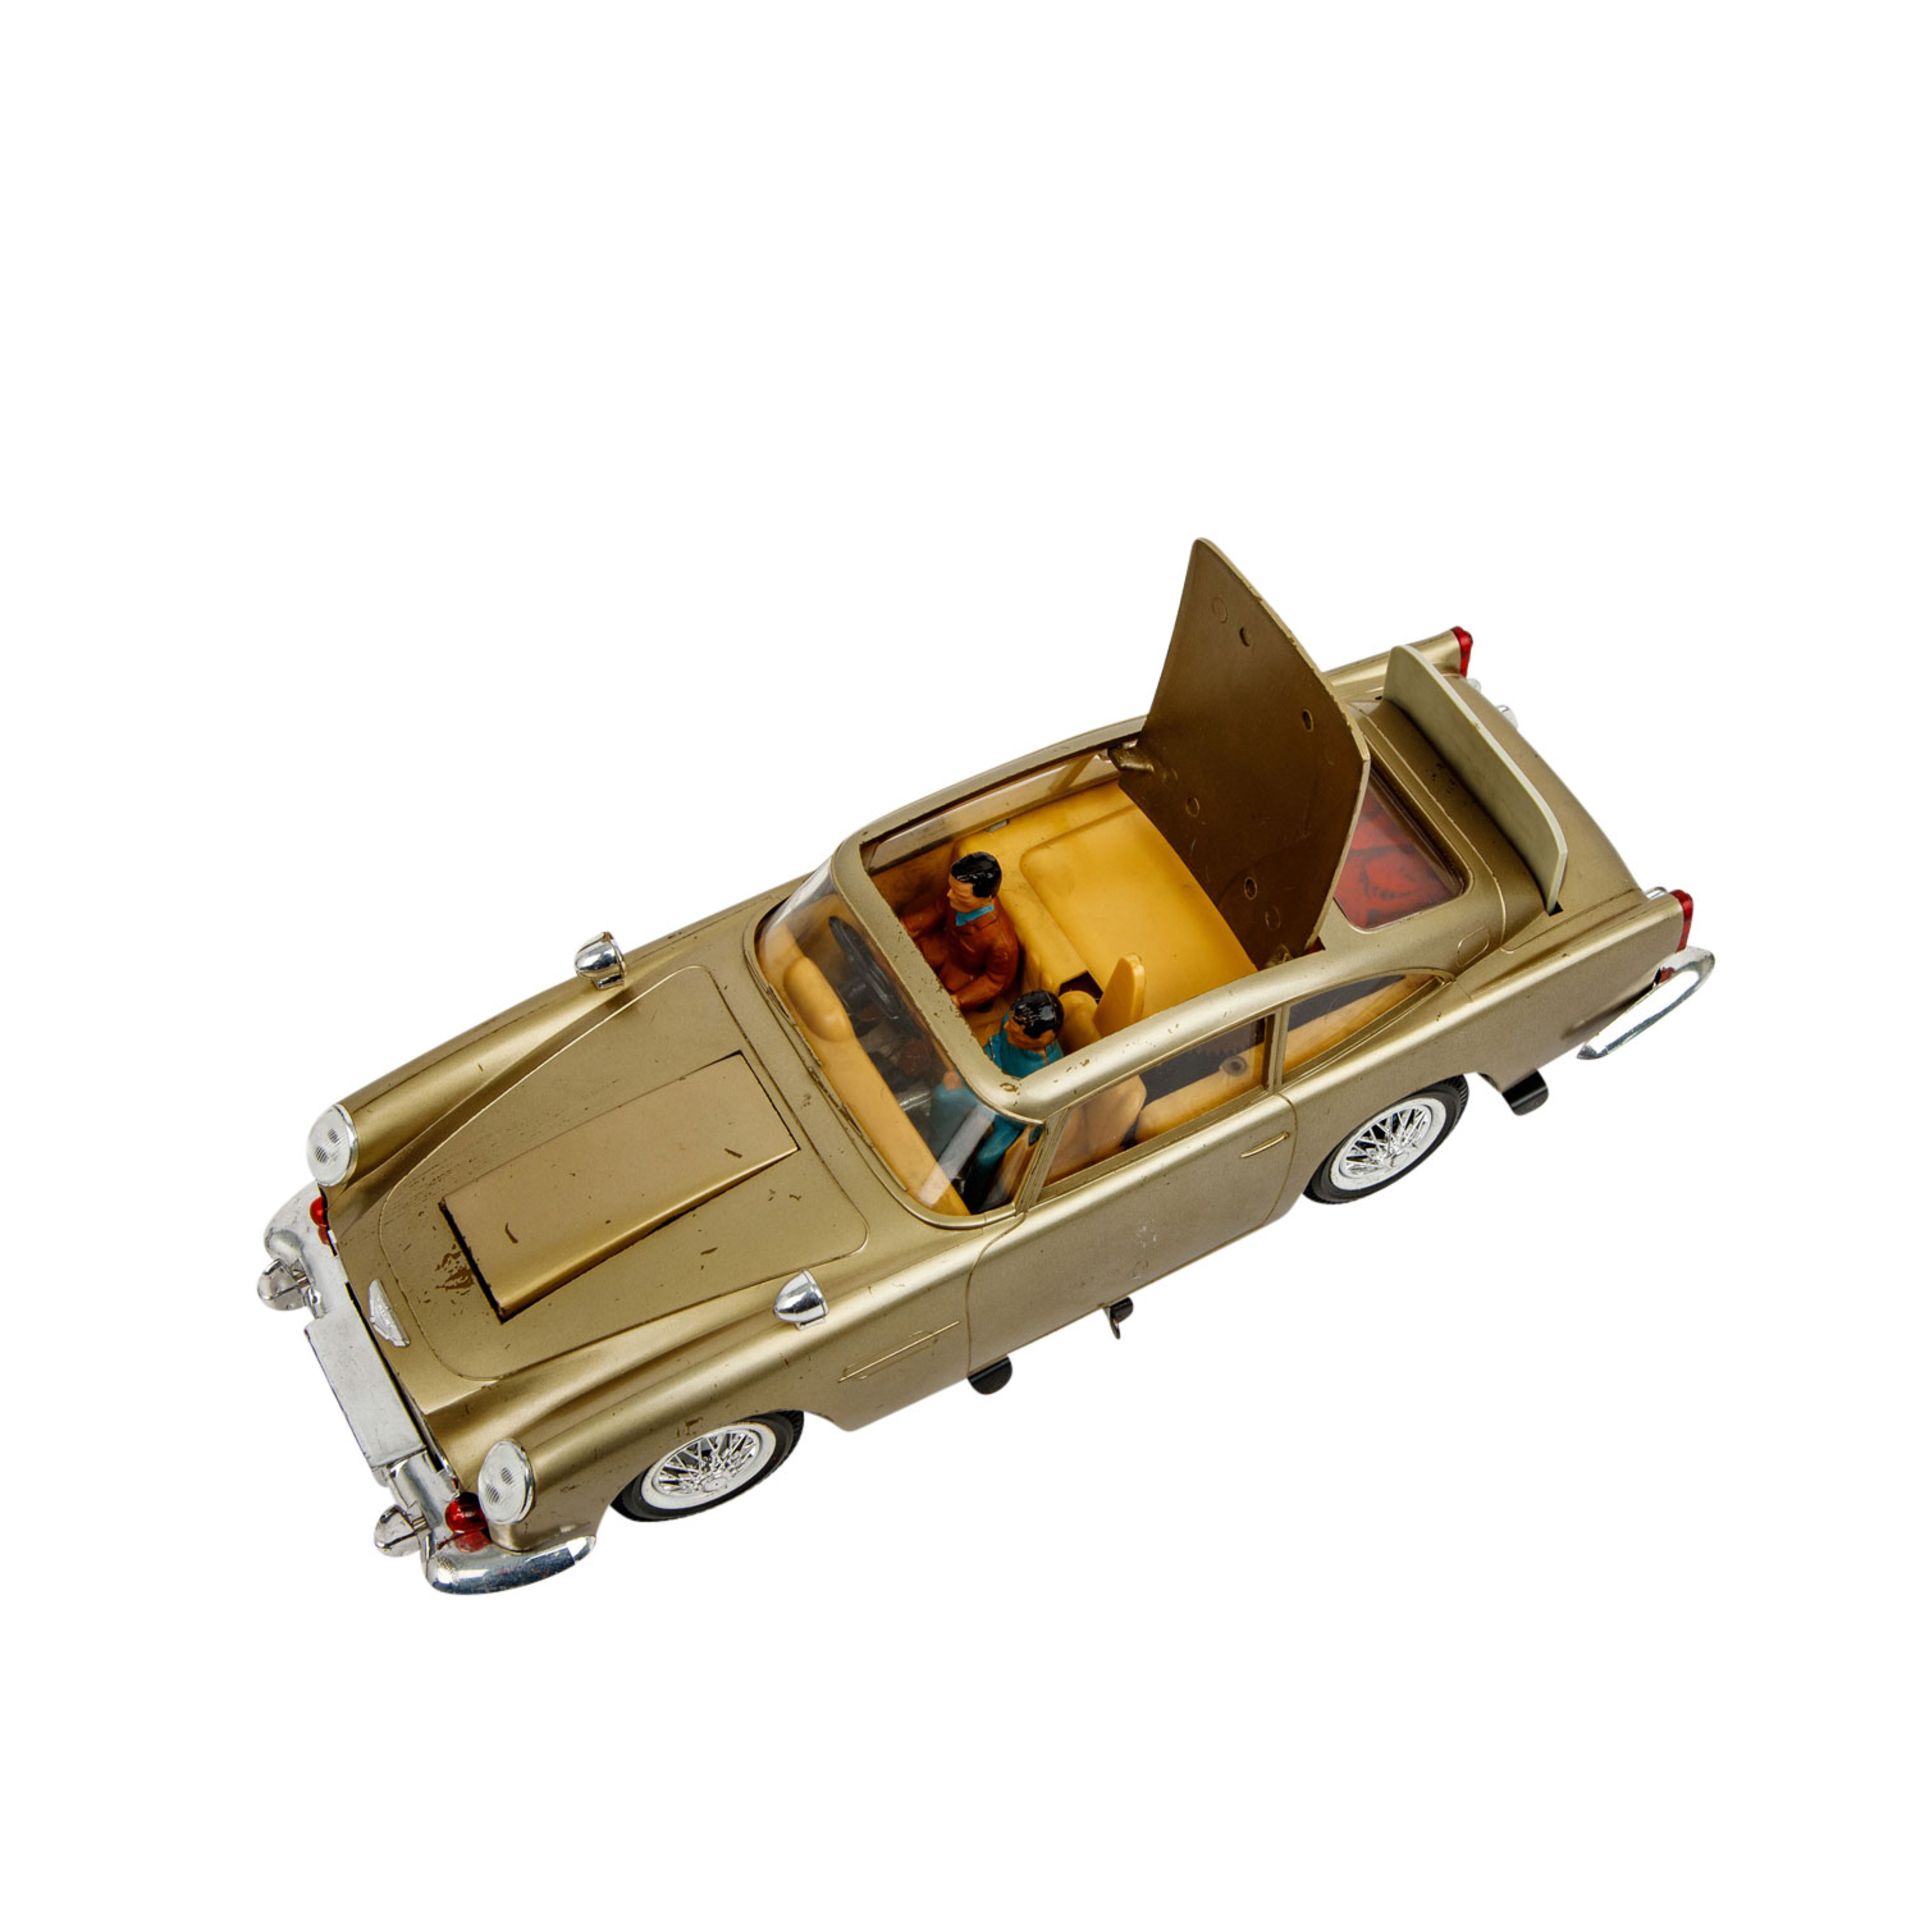 GAMA Modellfahrzeug Nr. 4900 "James Bond 007 Goldfinger", 1960er Jahre, - Bild 8 aus 9